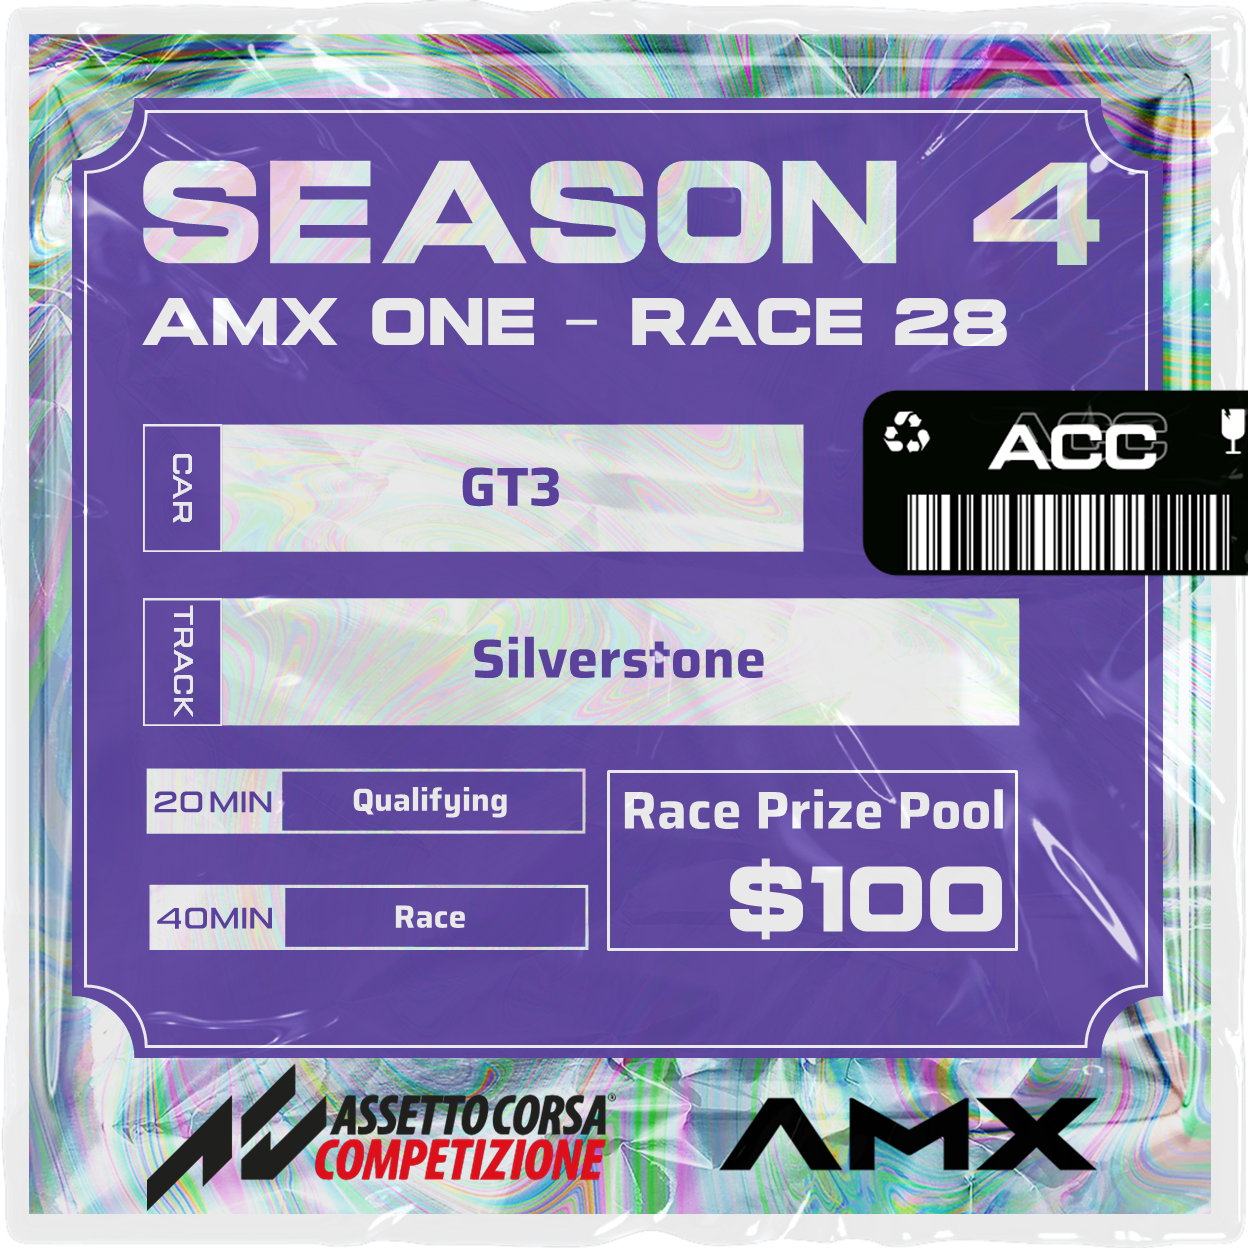 AMX ONE - RACE 28 [4/7 - 5:50 PM GMT]